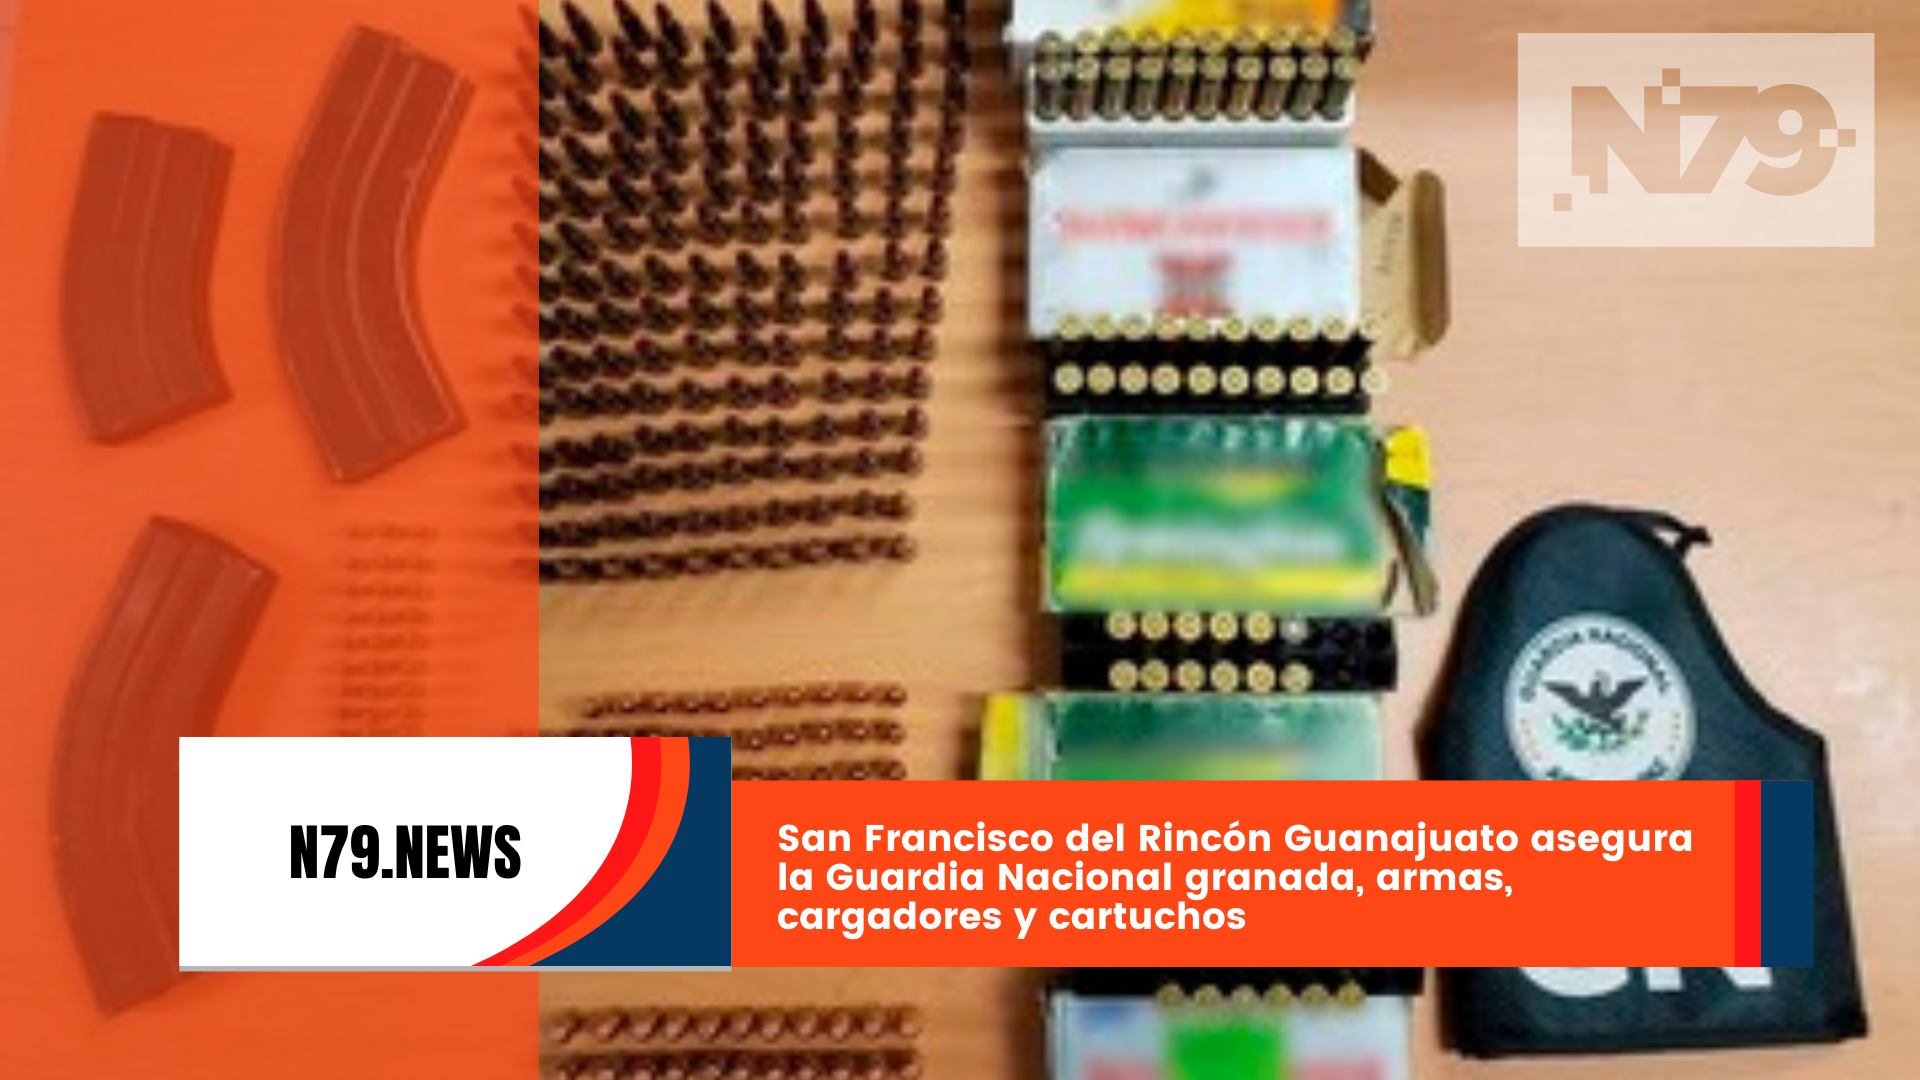 San Francisco del Rincón Guanajuato asegura la Guardia Nacional granada, armas, cargadores y cartuchos